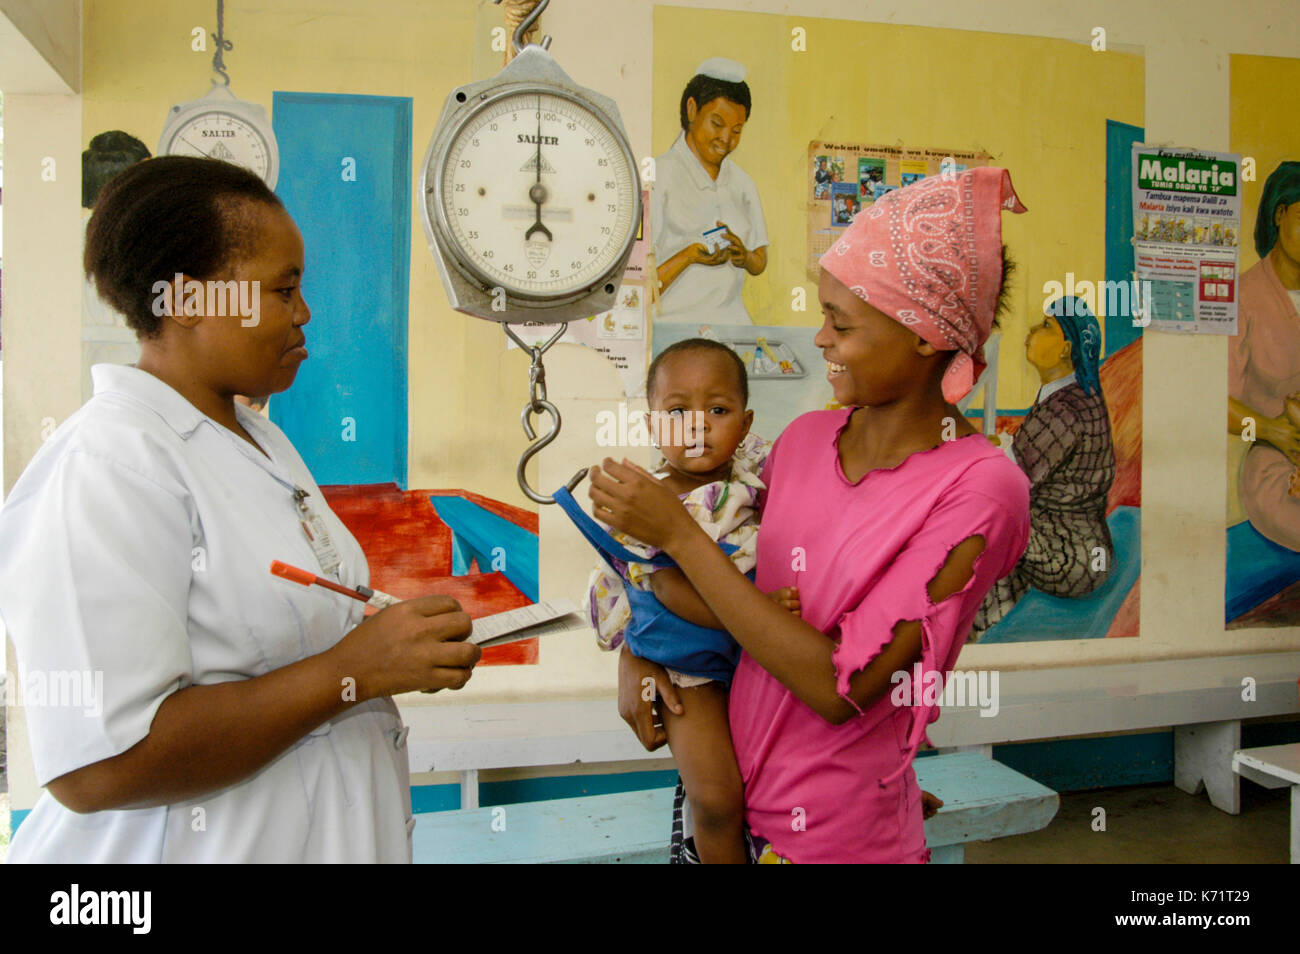 Mother and child consult a burse, public health service, Moshi, Kilimanjaro region, Tanzania Stock Photo